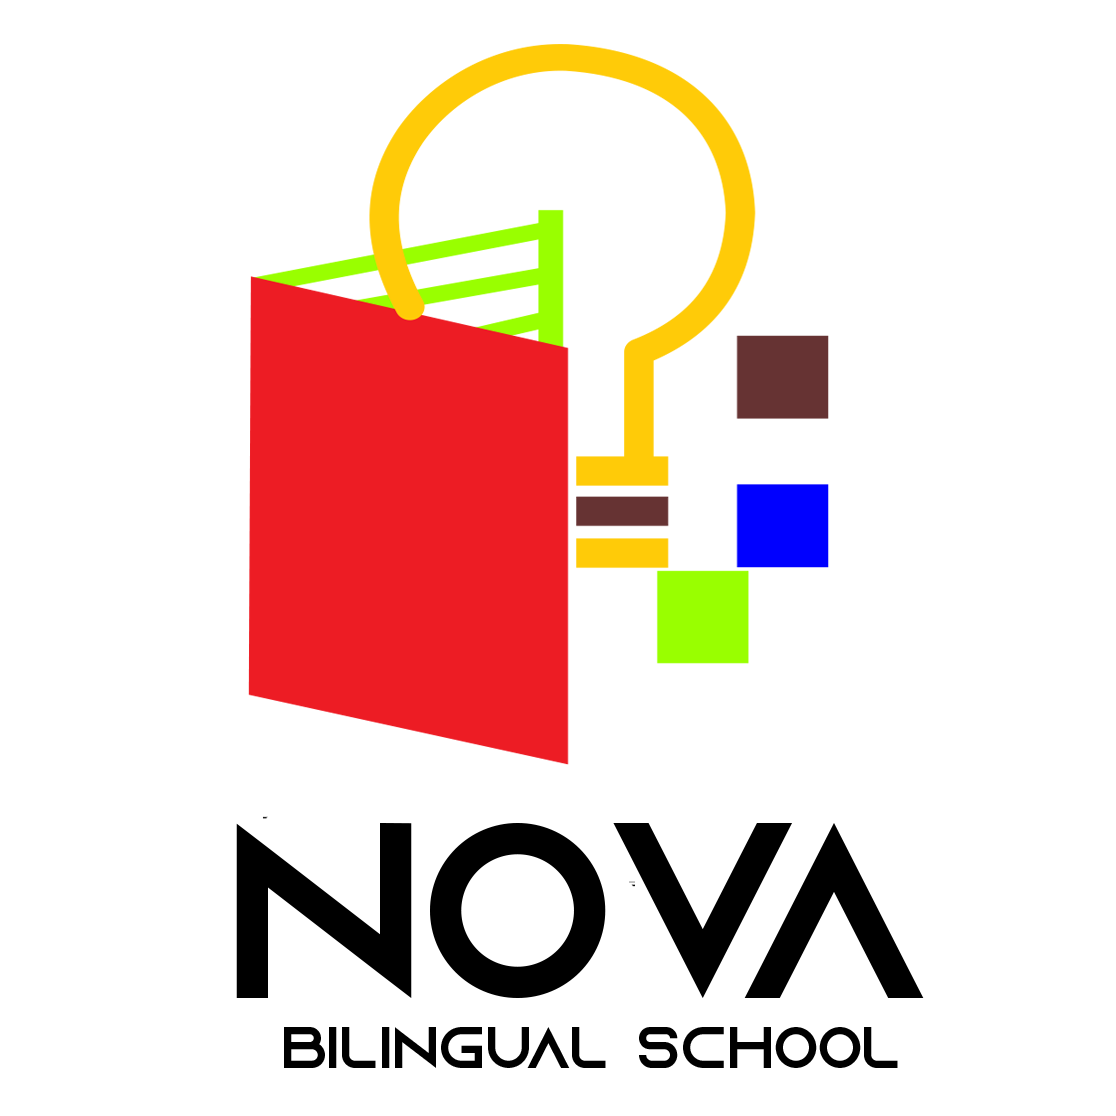 NOVA BILINGUAL SCHOOL